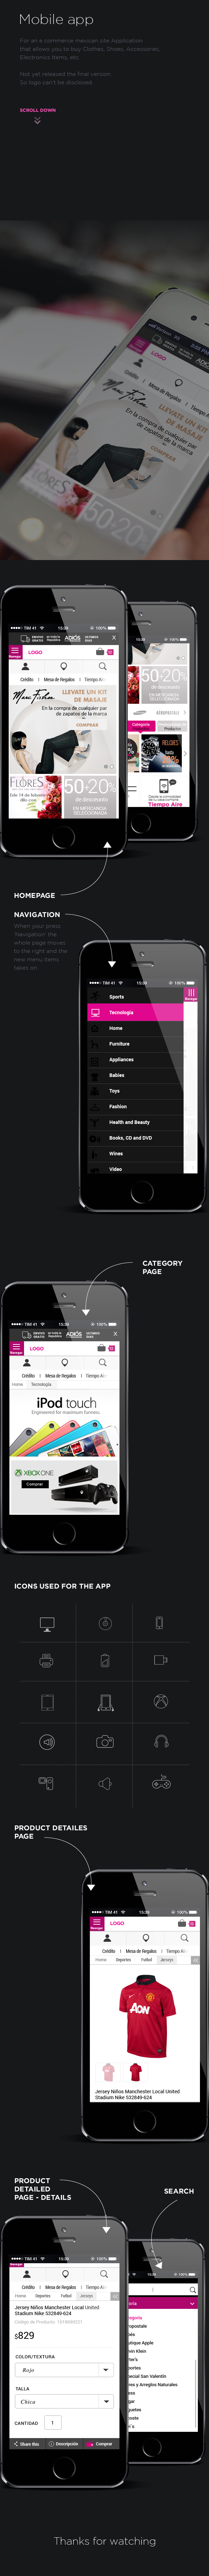 Mobile app mobile design Web/Mobile Design